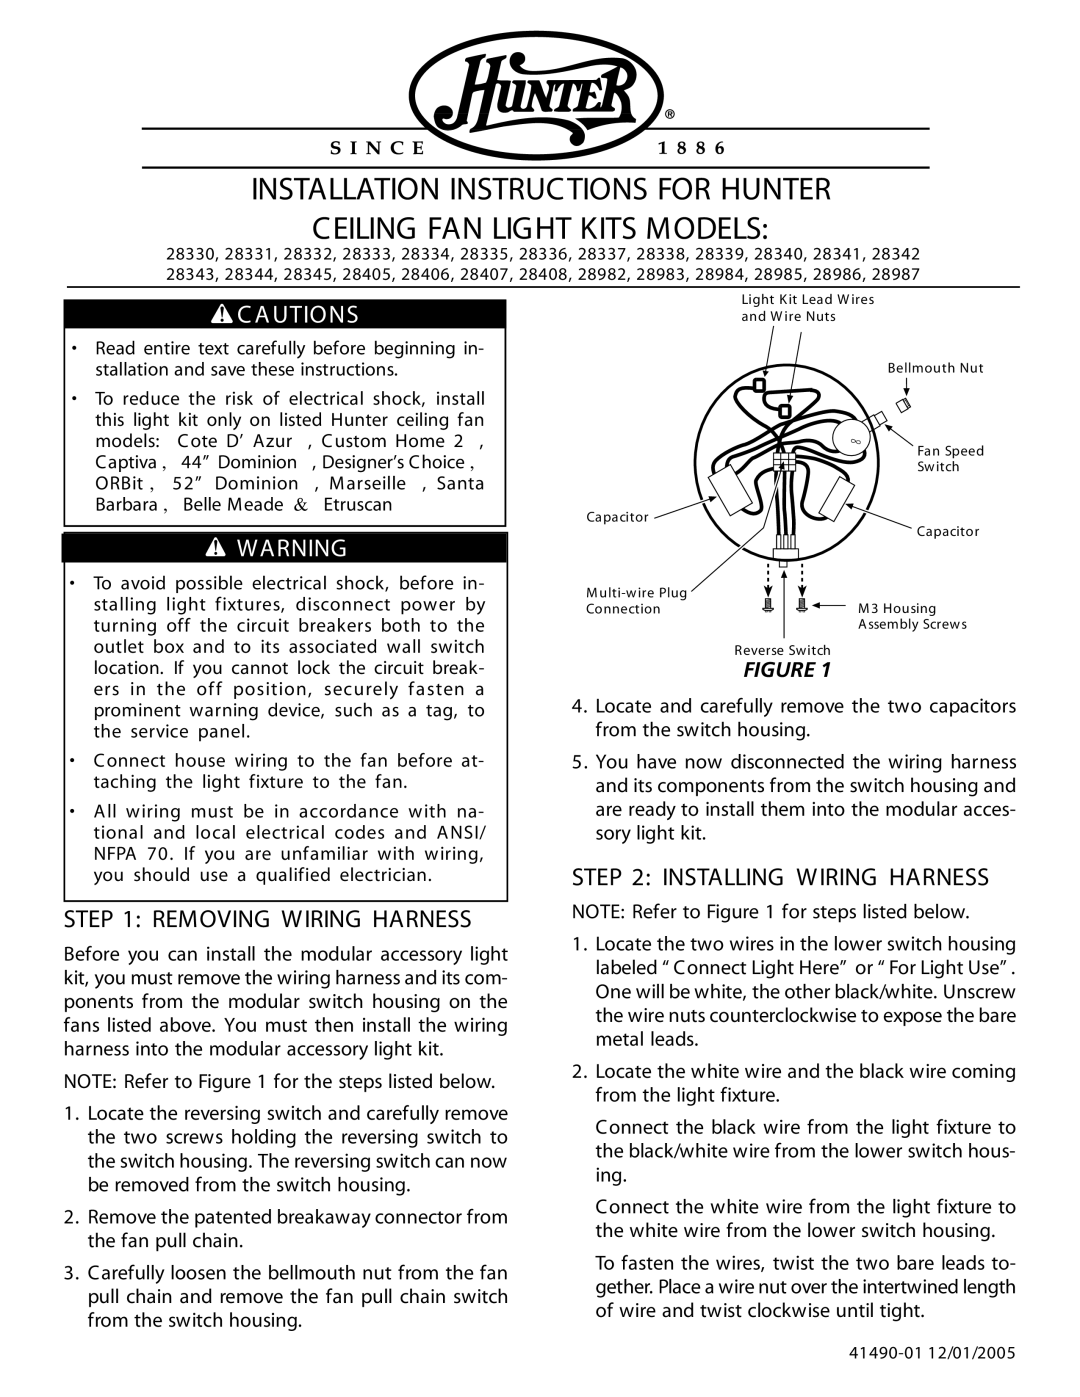 Hunter Fan 28984, 28983, 28982 installation instructions Removing Wiring Harness, Installing Wiring Harness, C Autions 